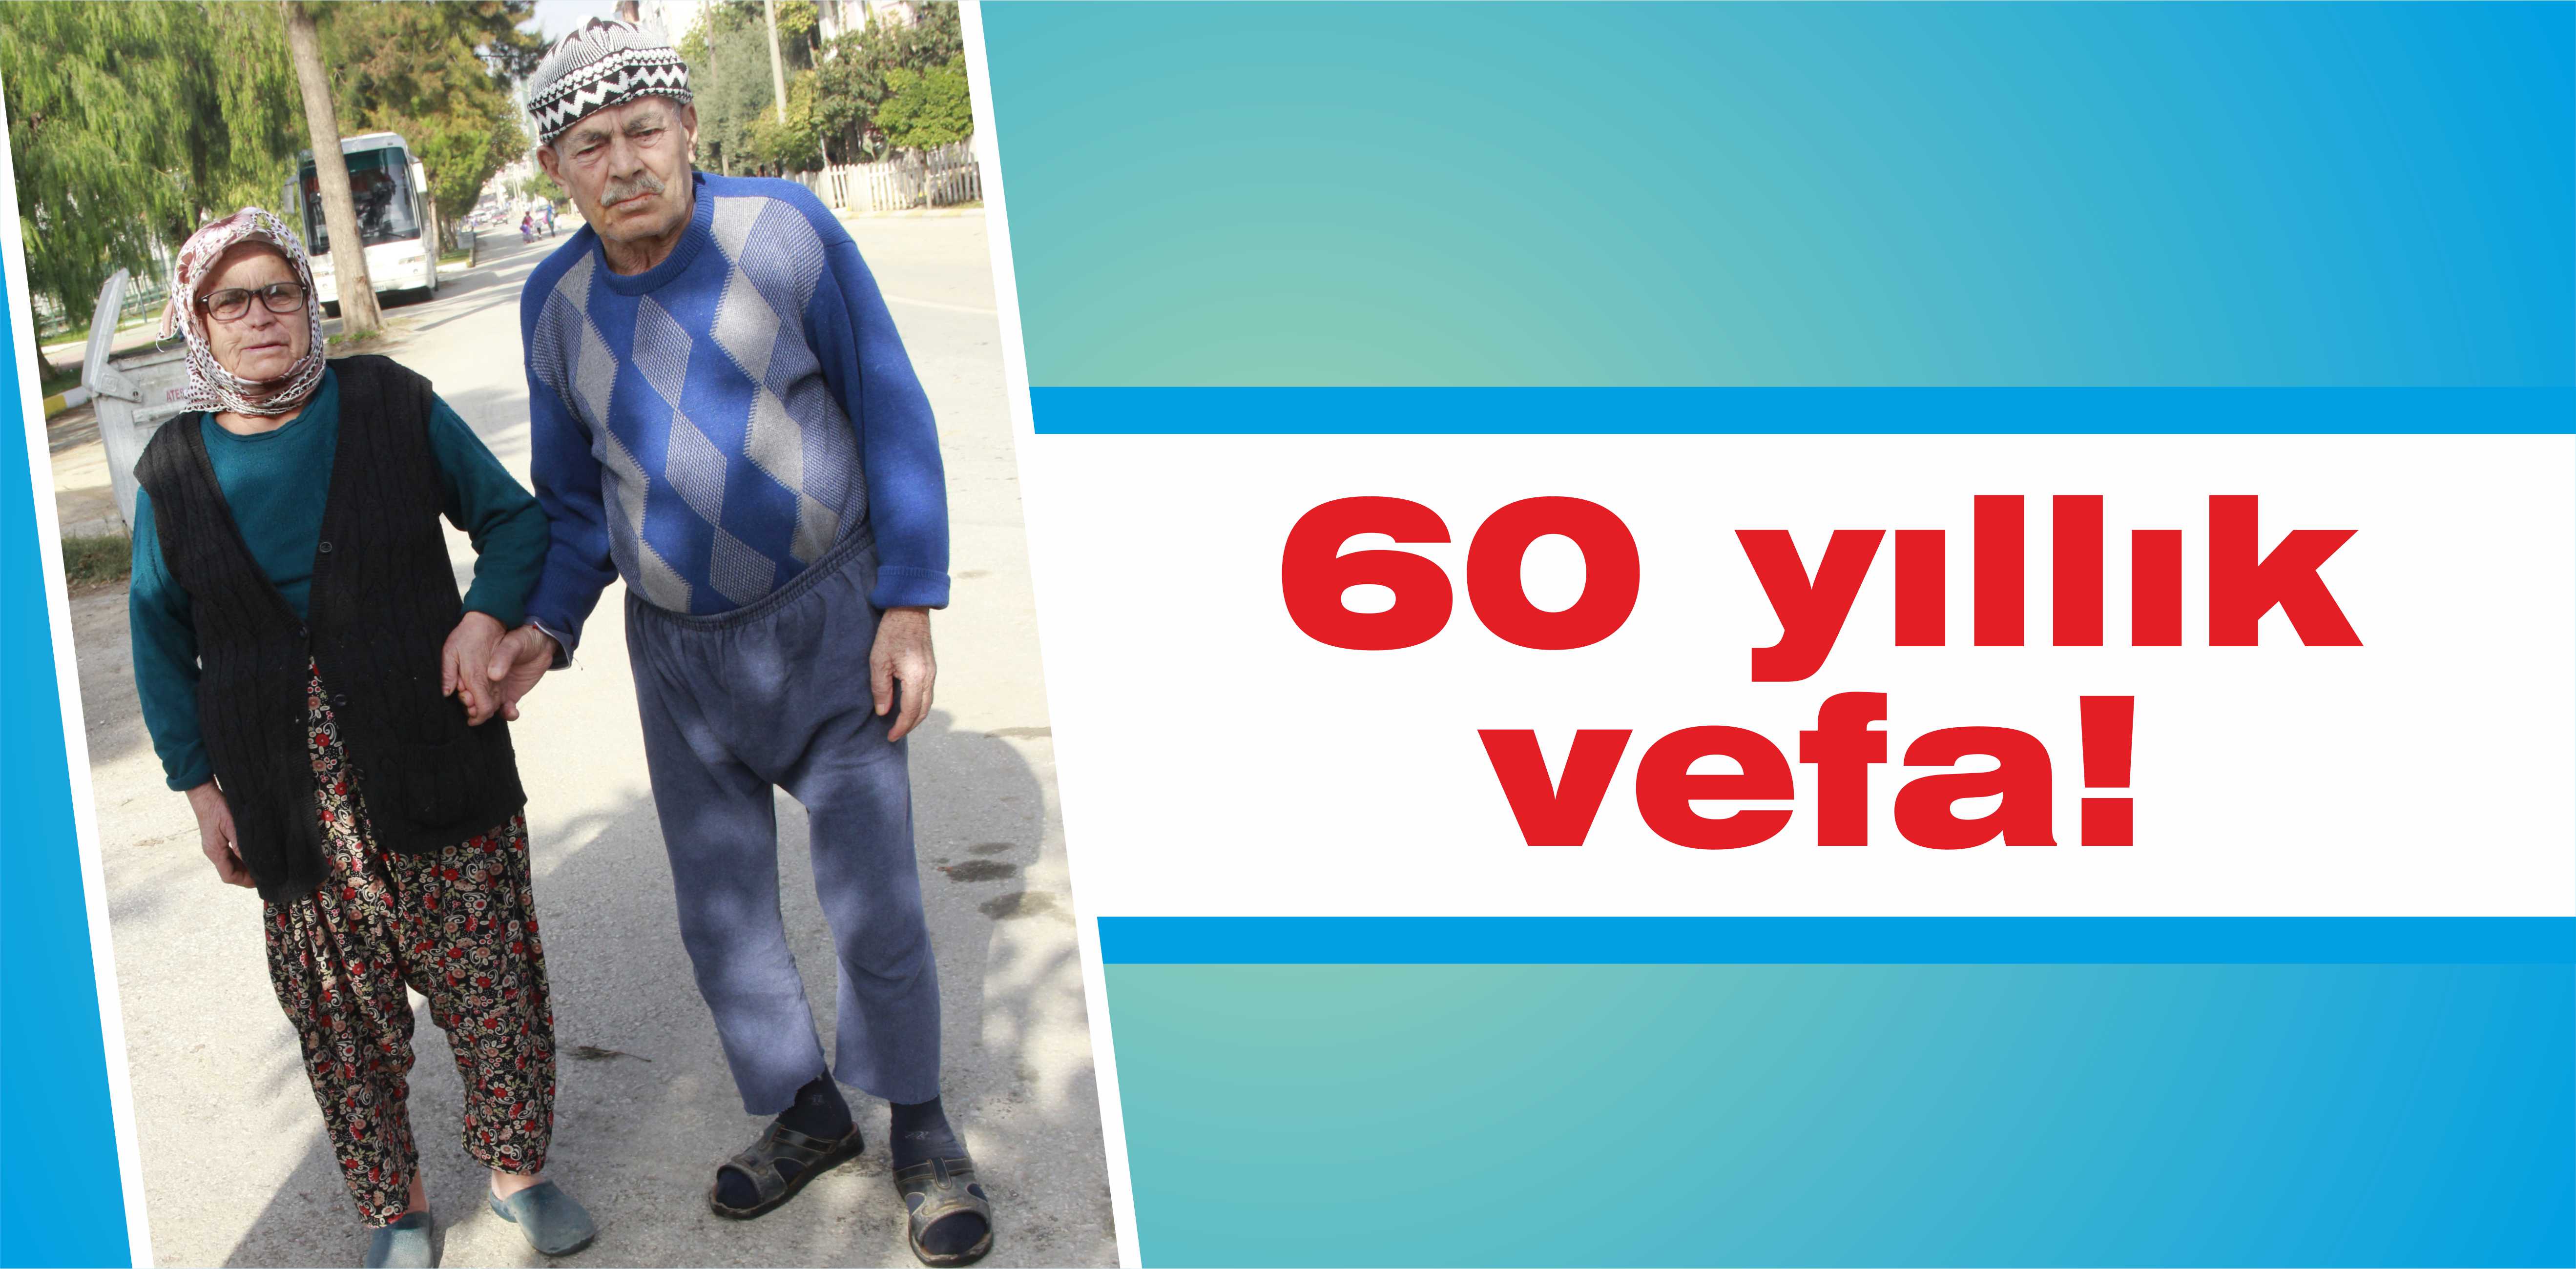 60 yıllık vefa!